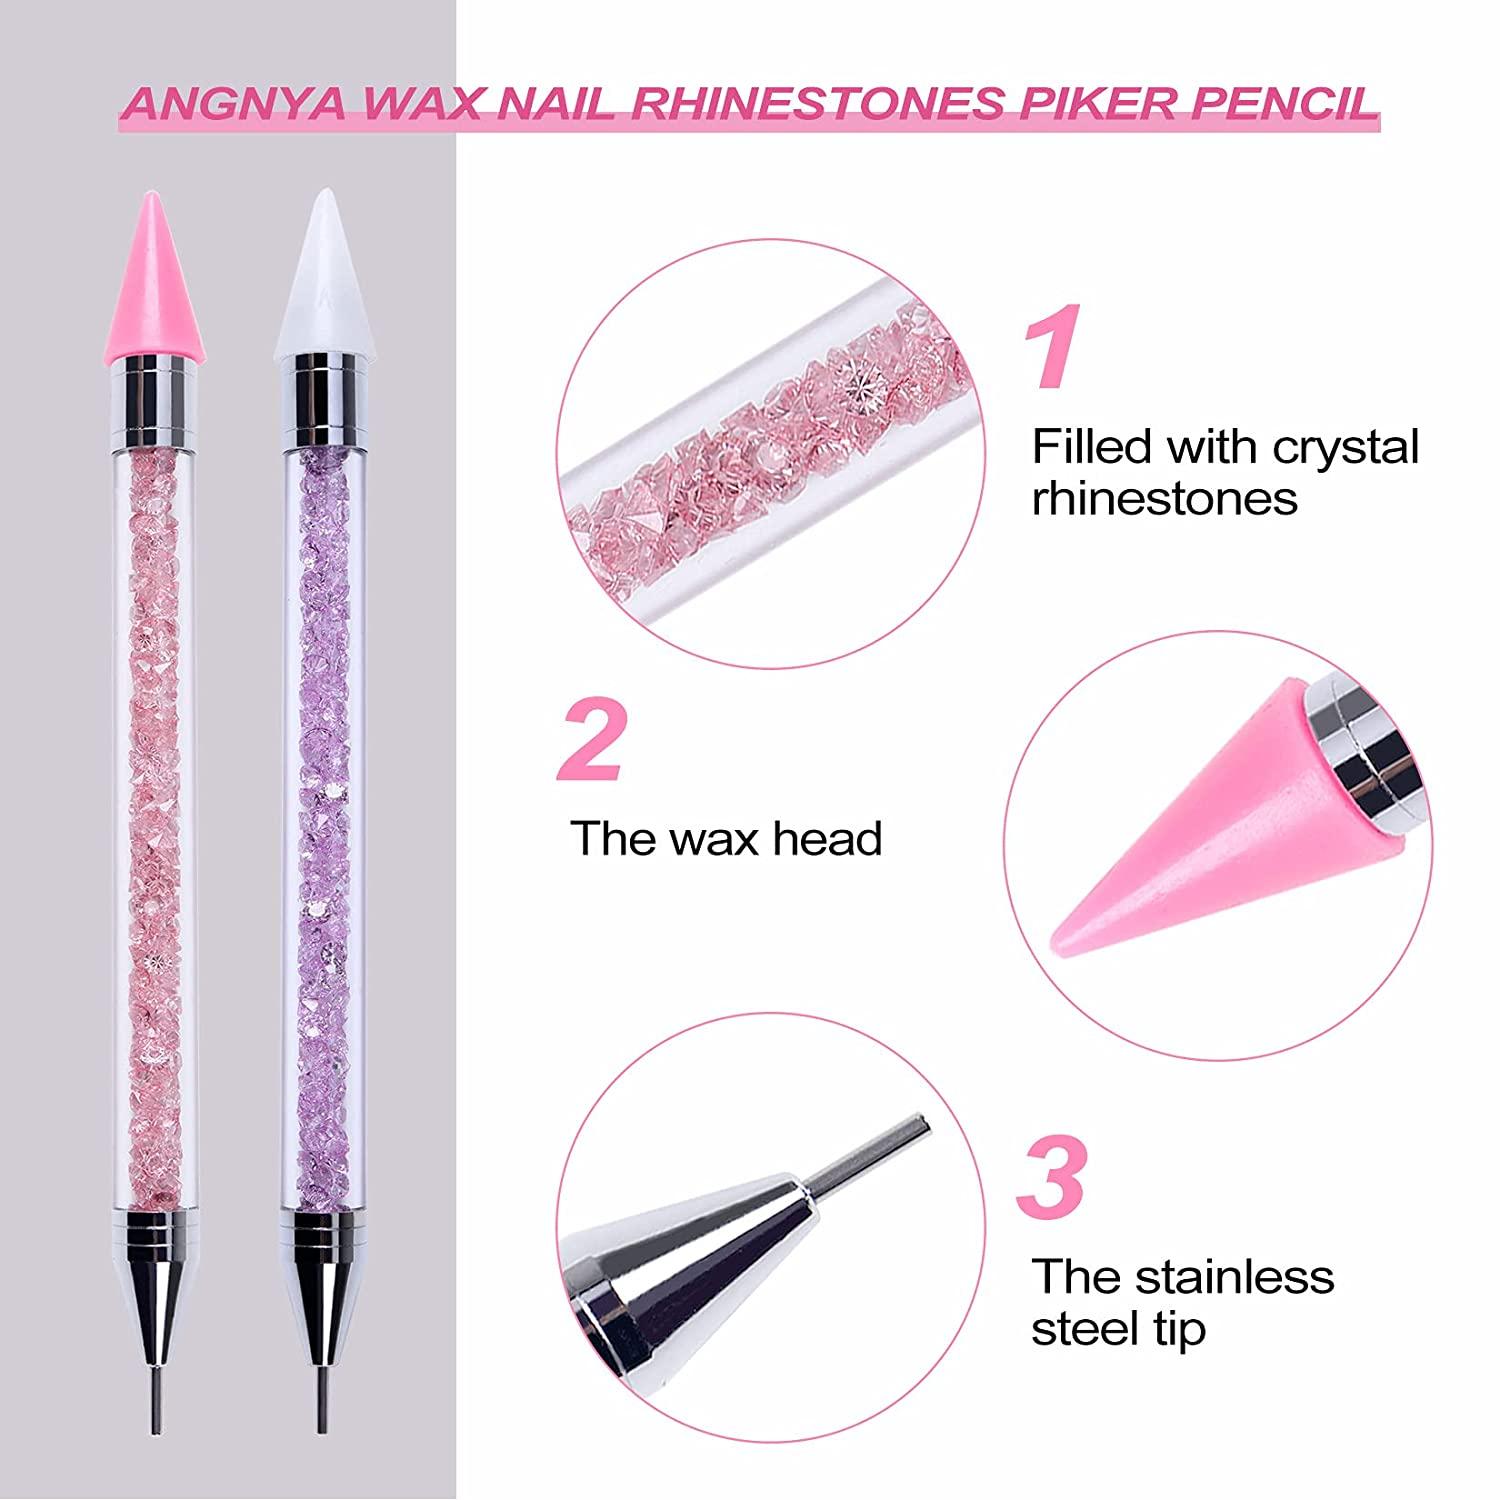 ANGNYA 2PCS Wax Nail Rhinestone Picker Dotting Pen,Dual-ended Wax